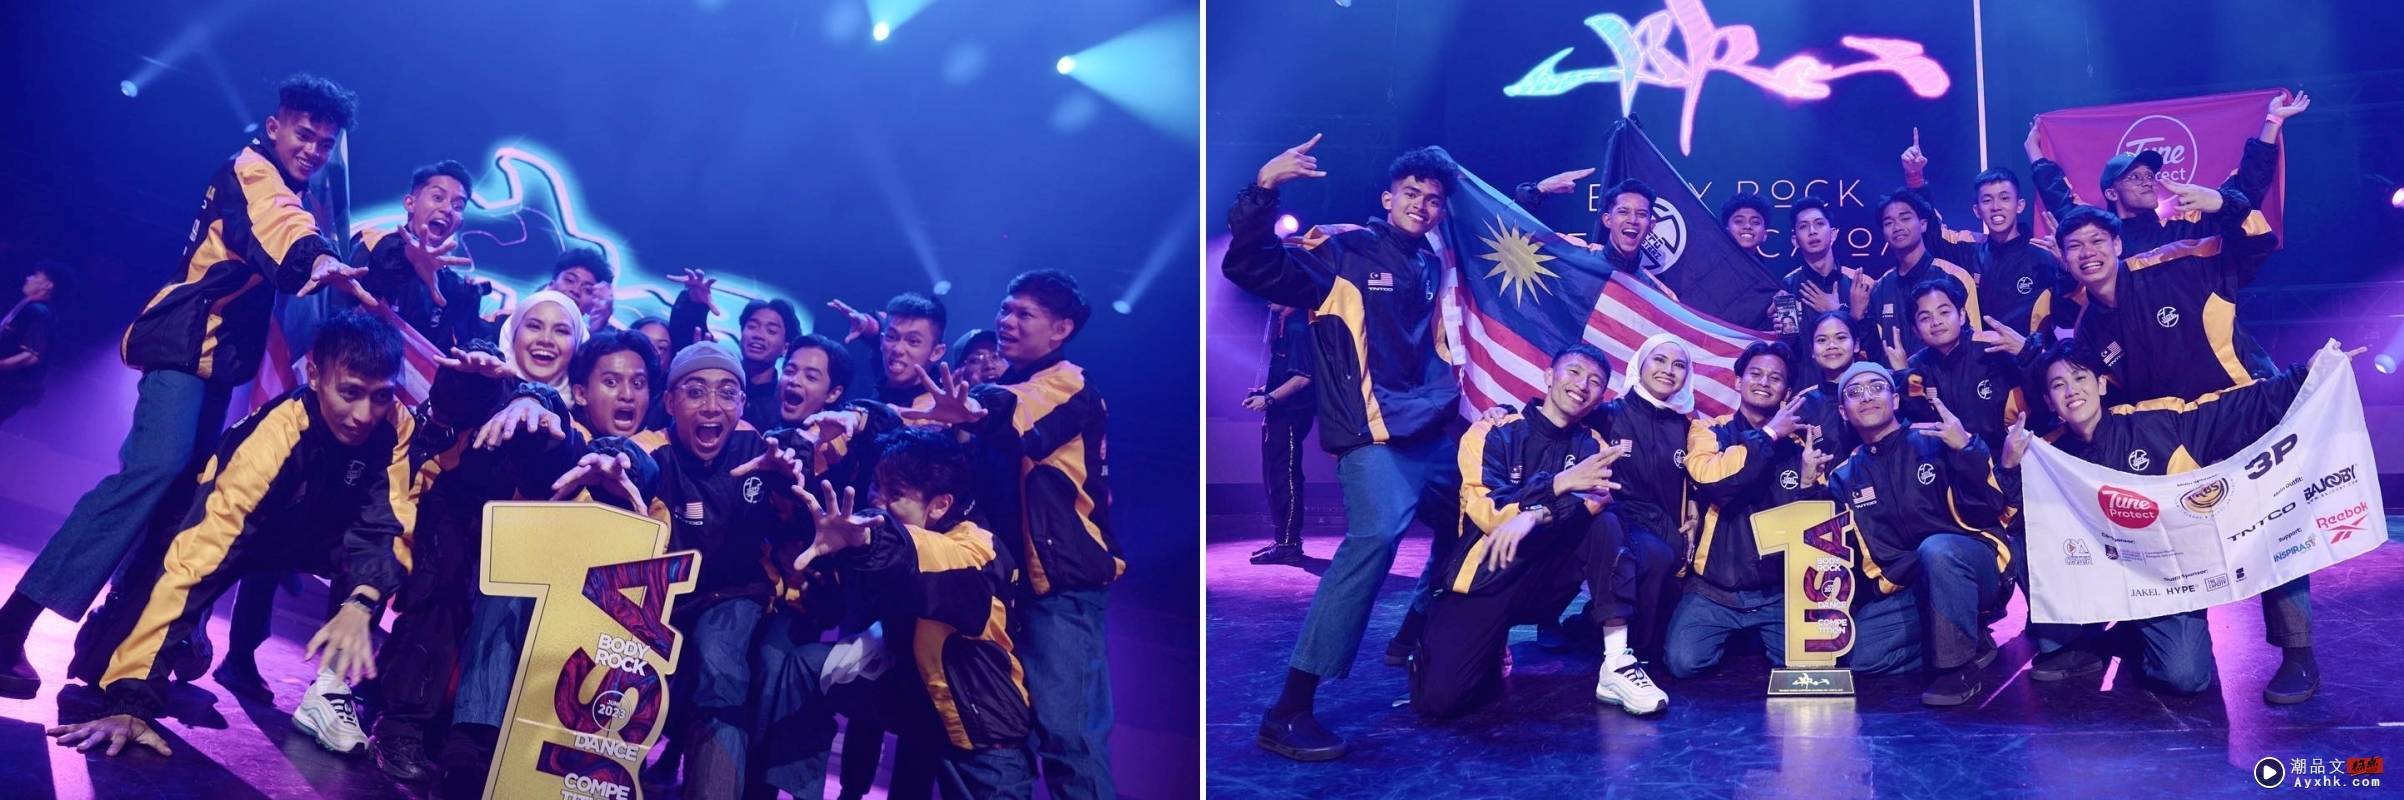 打败墨西哥、加拿大代表...马来西亚队伍“Zeppo Youngsterz”美国舞蹈比赛夺冠！ 娱乐资讯 图1张